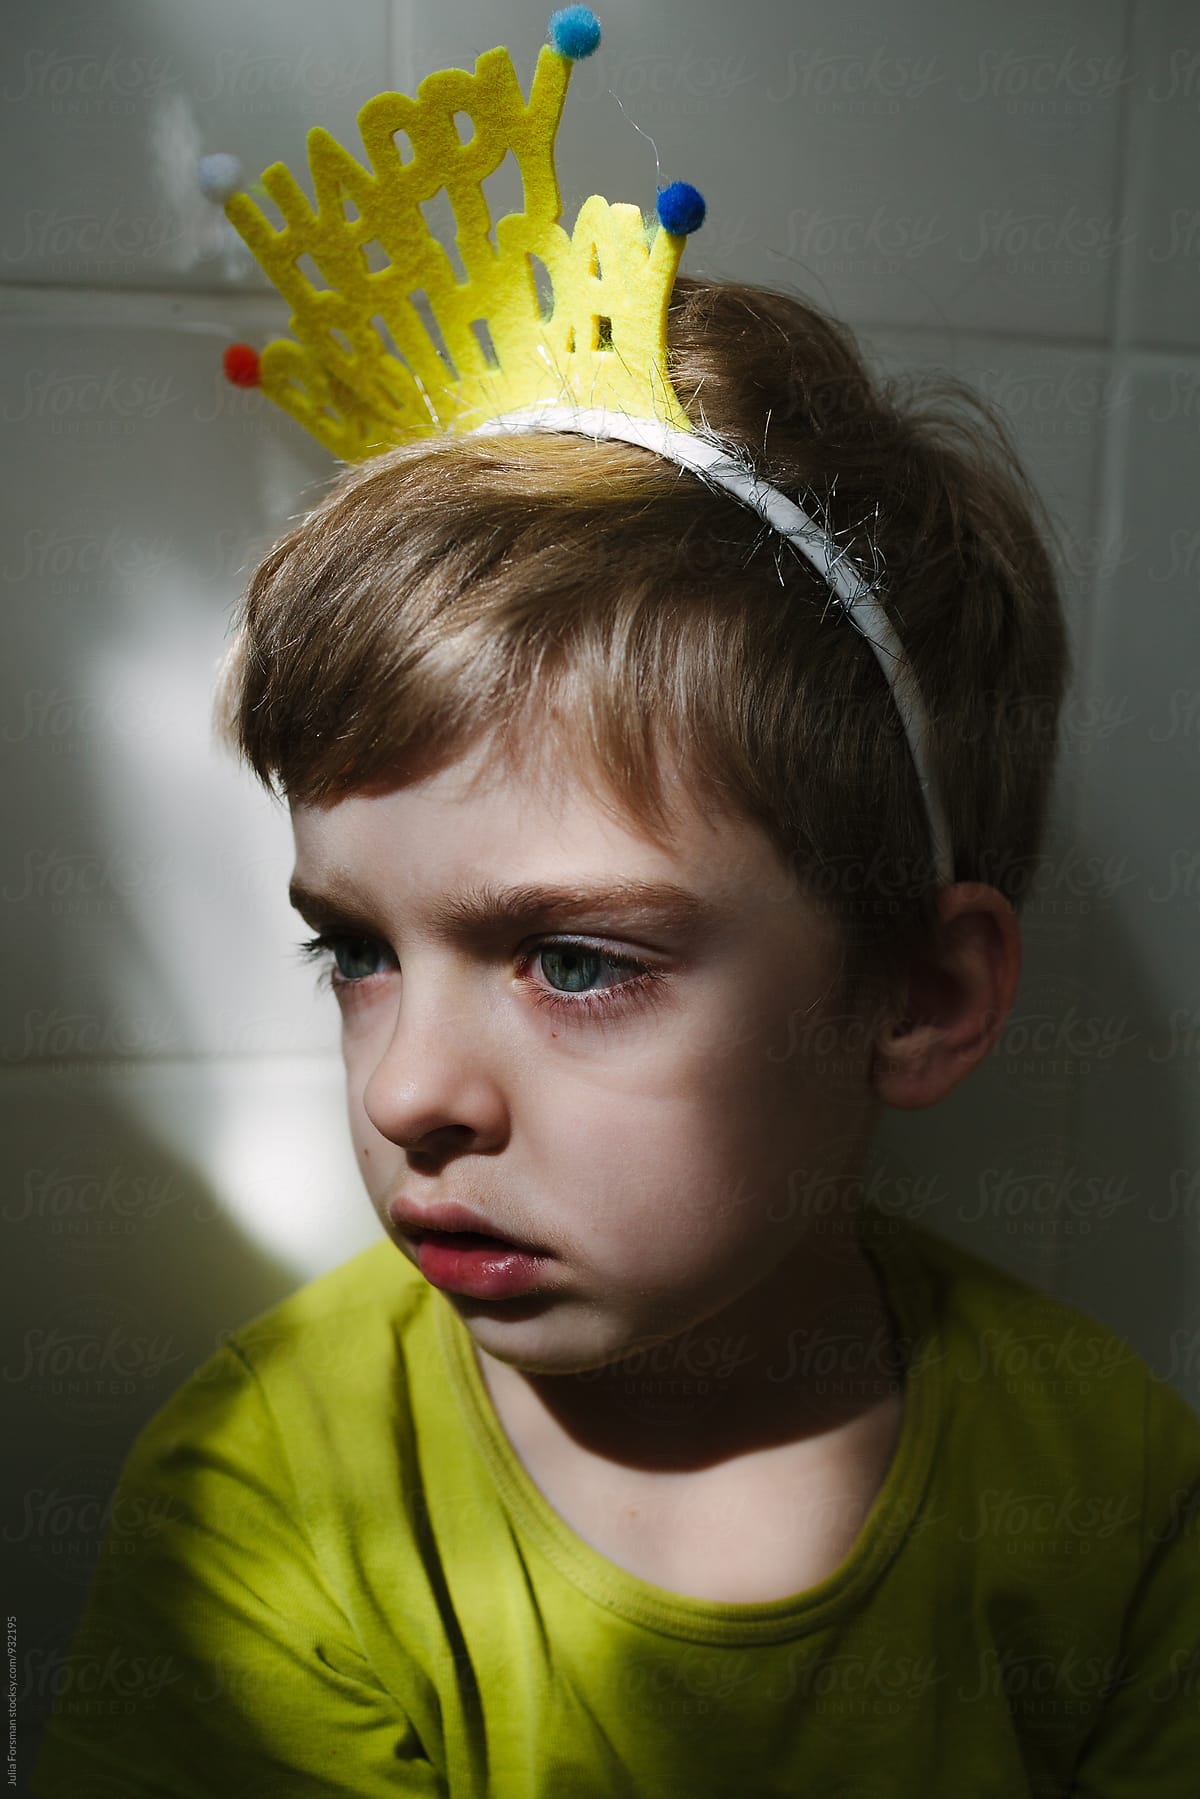 Close up of sad birthday boy sitting in bathroom.